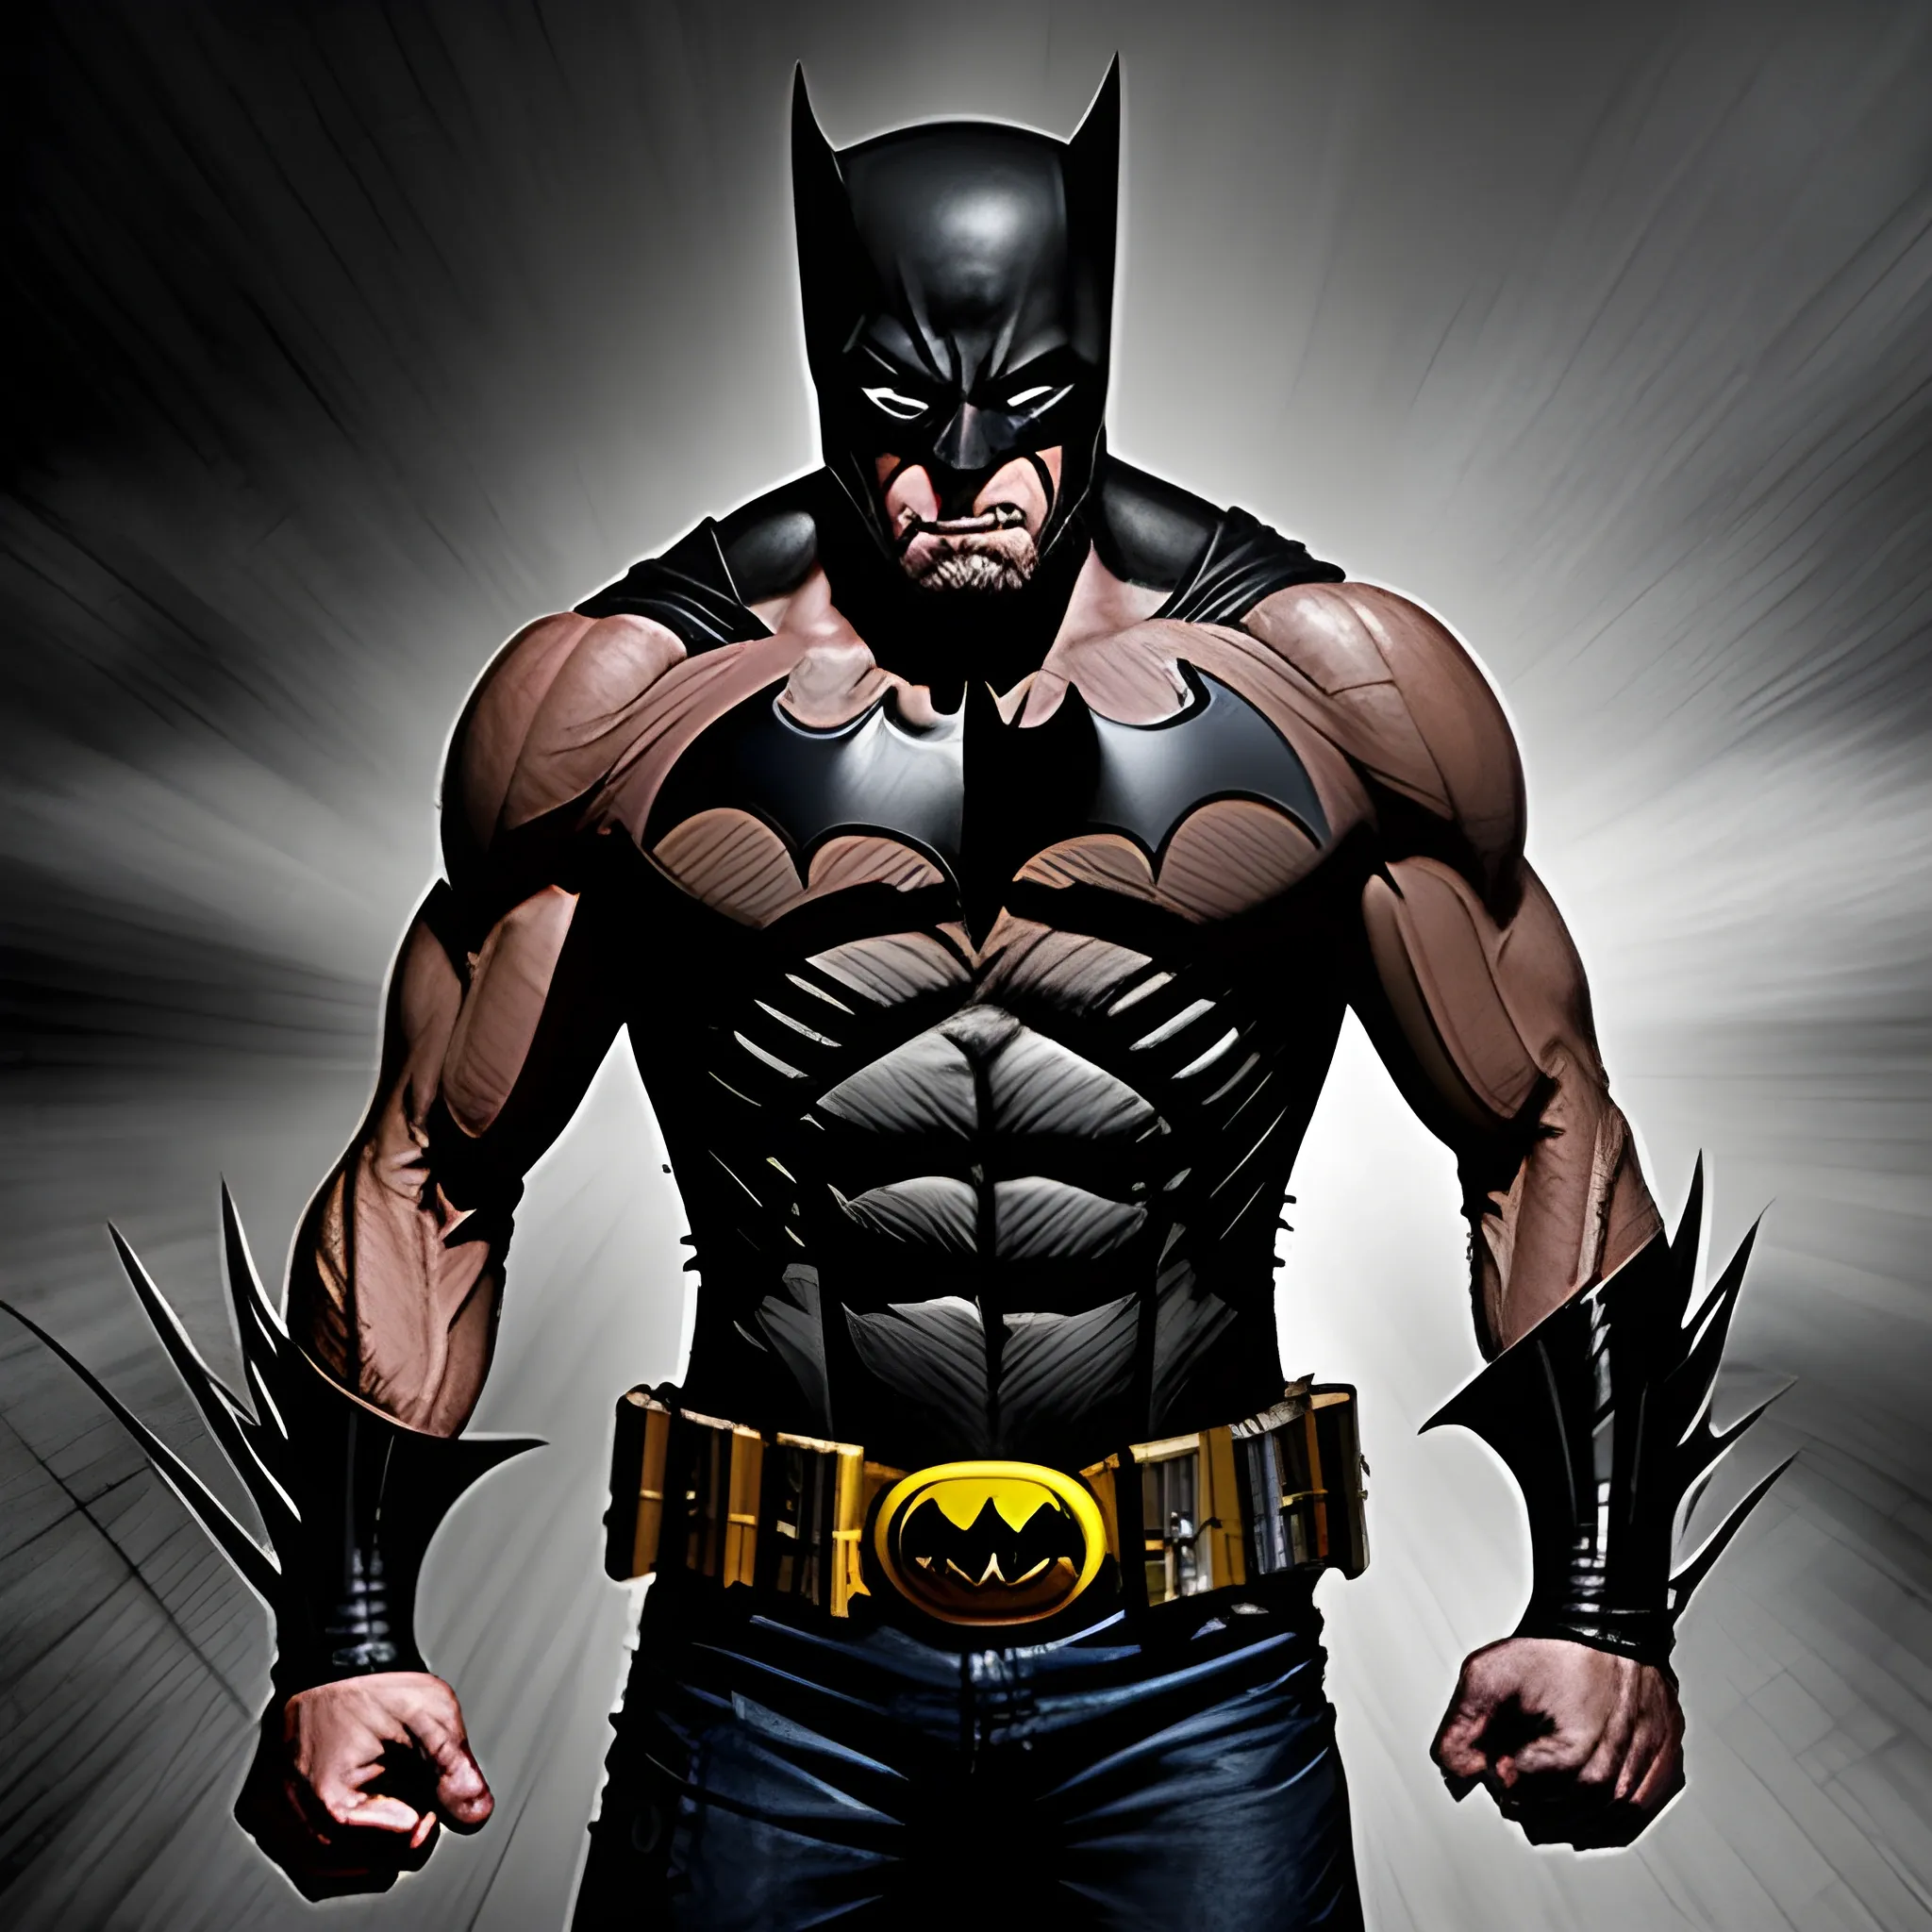 Fusion de wolverine y batman por Zack Snyder cuerpo completo 